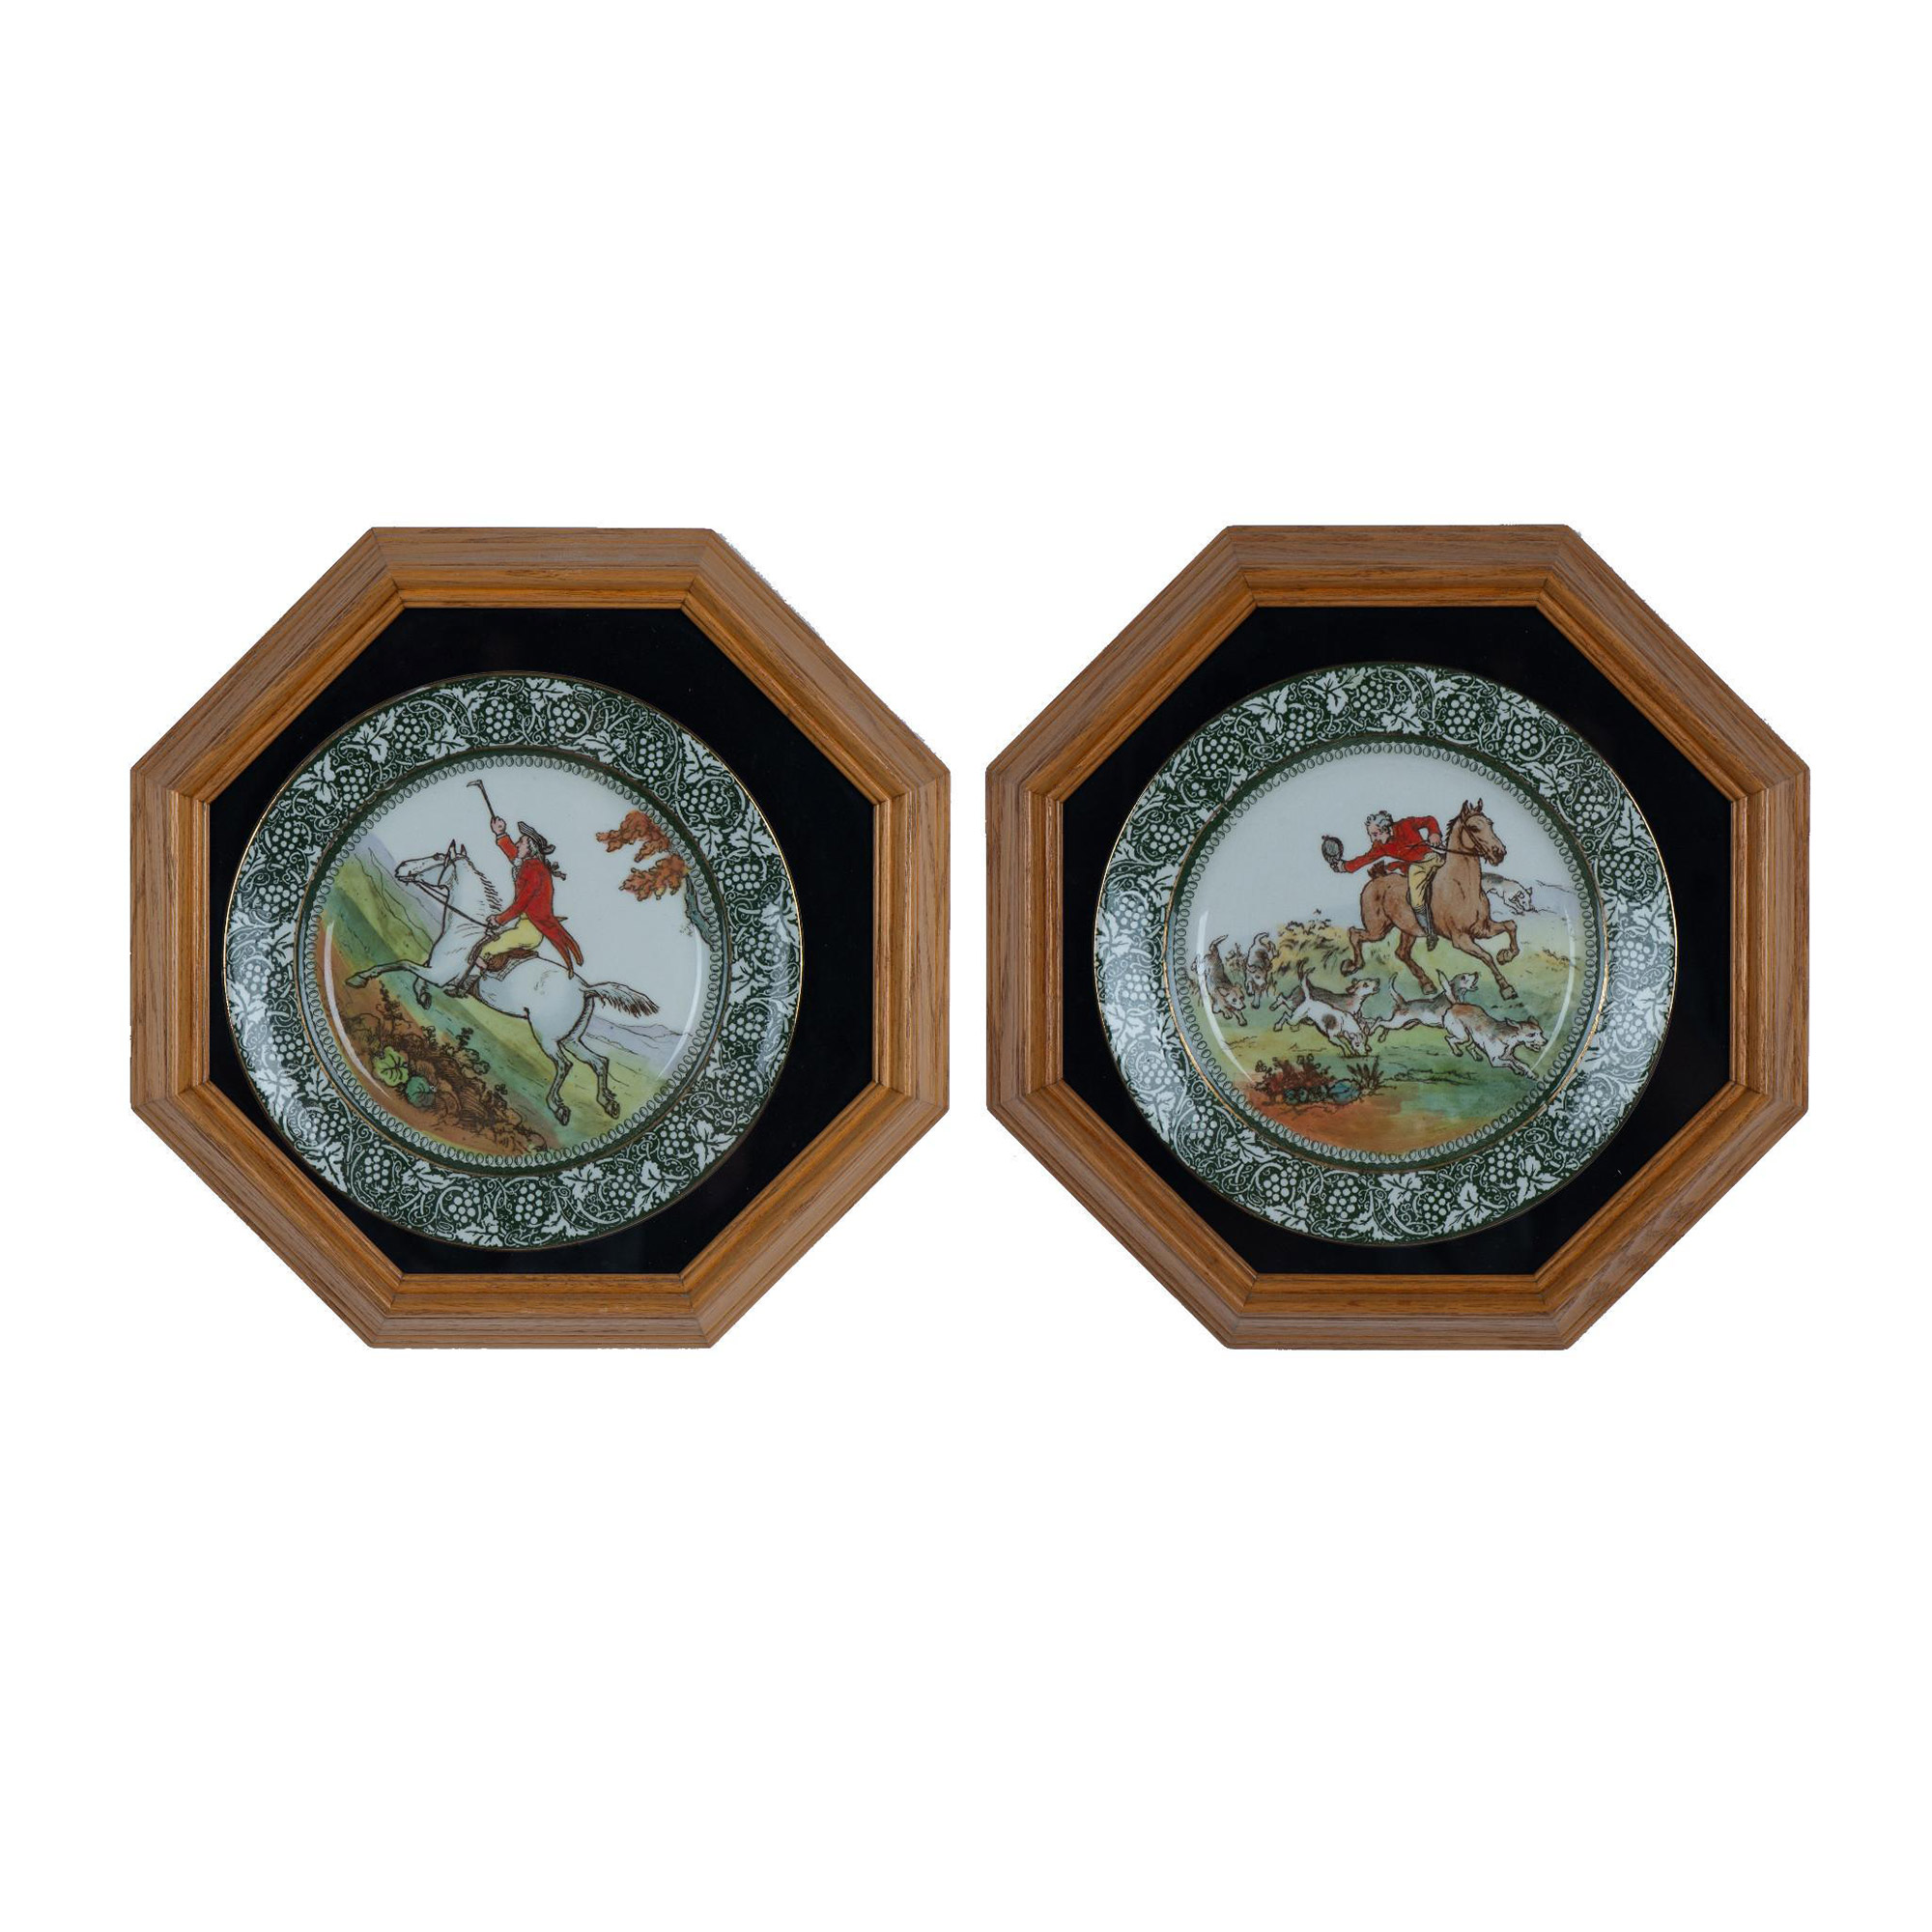 Pair of Royal Doulton Hunting Morland Seriesware Plates